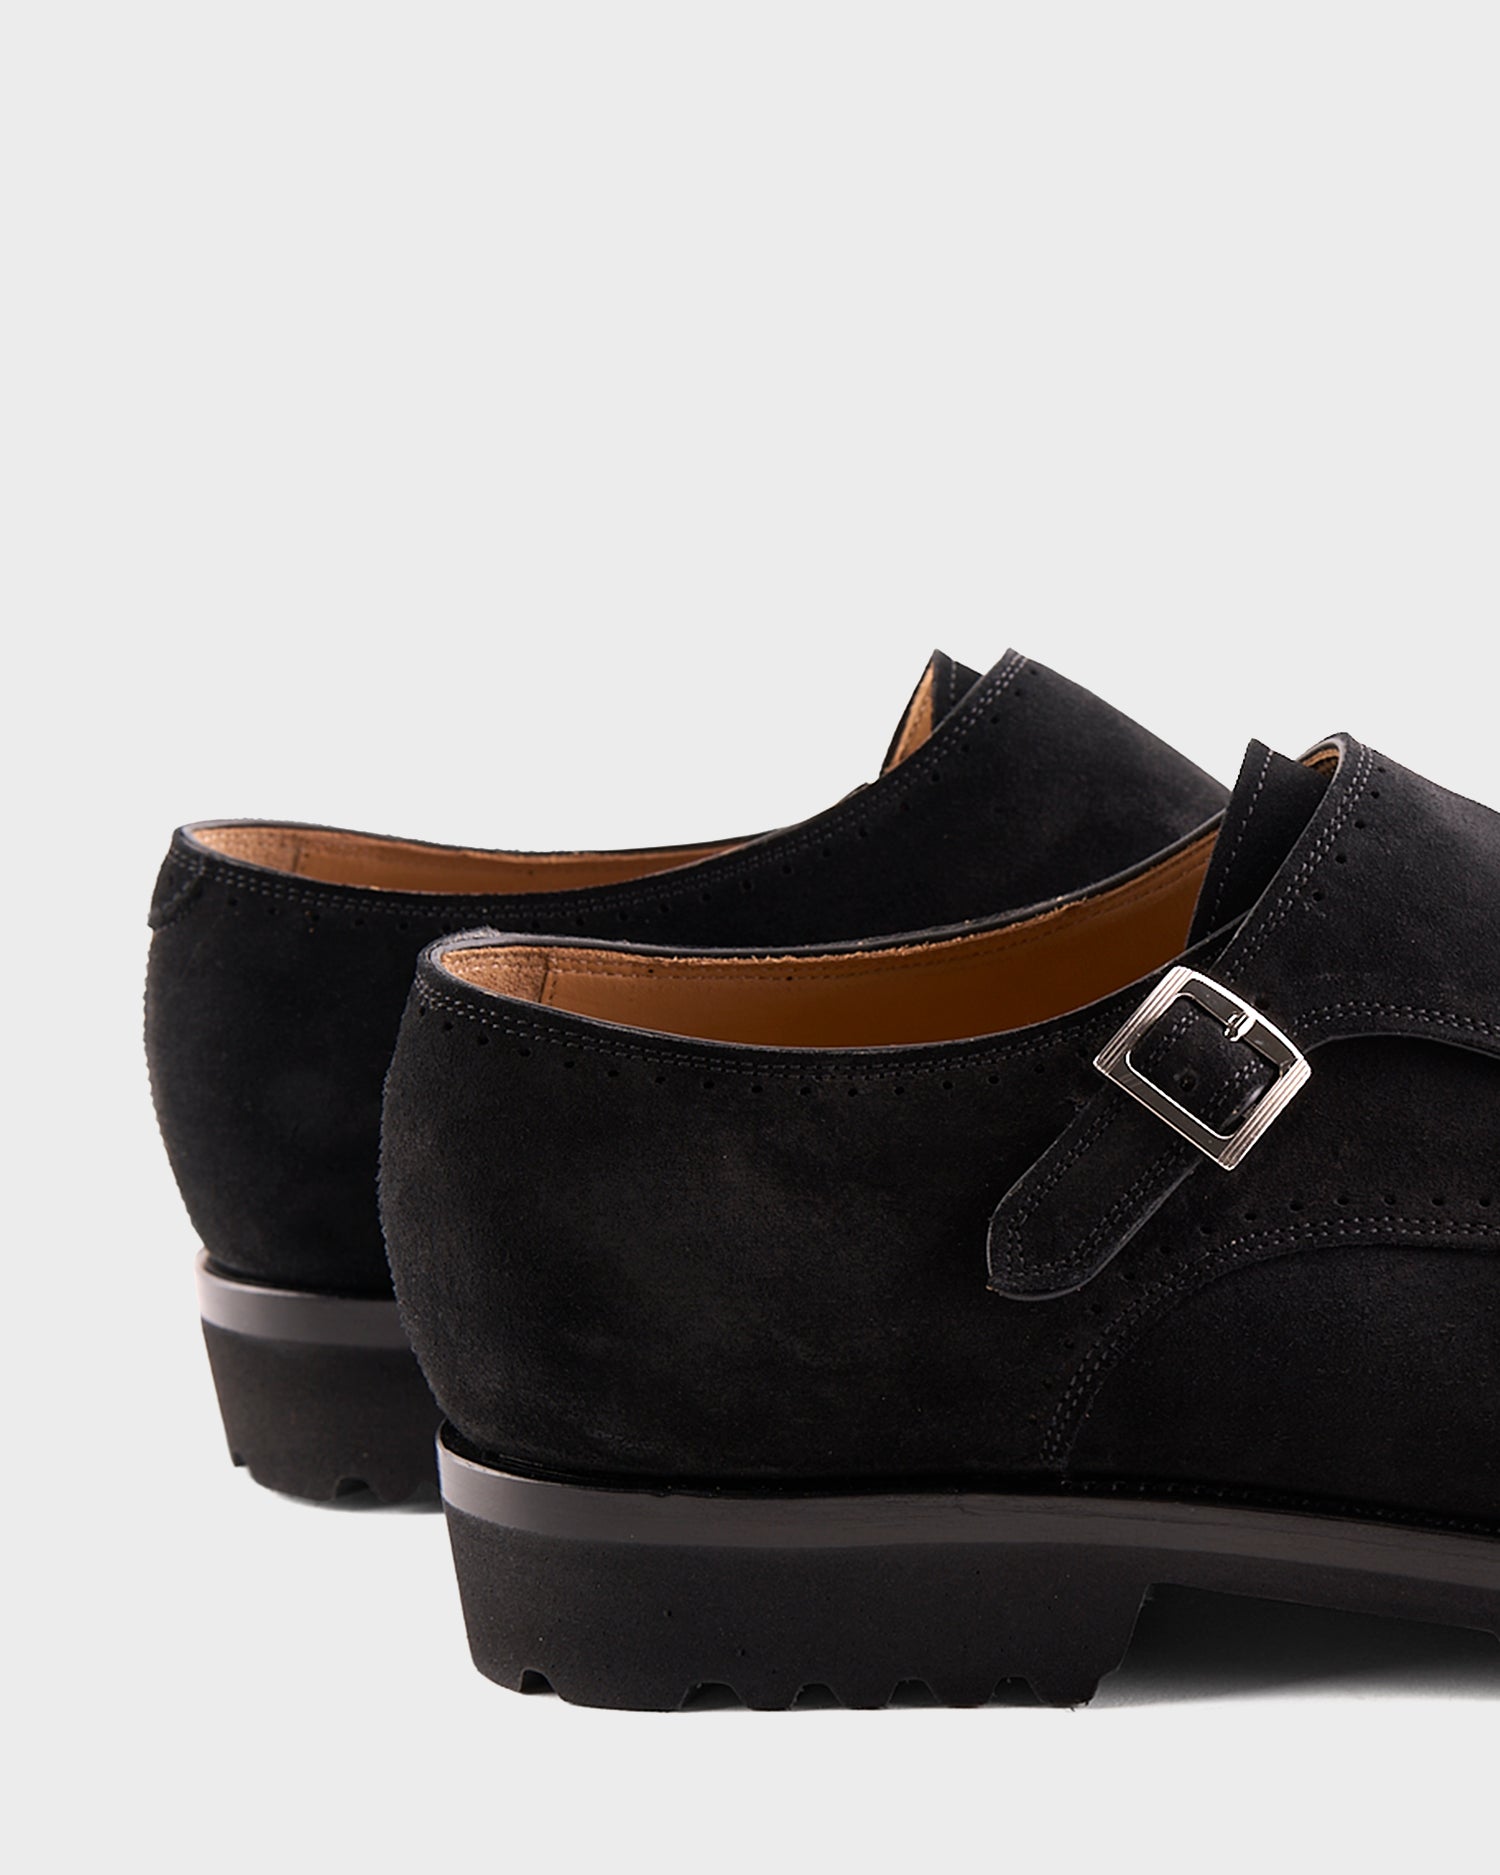 Black Suede Double Monk Shoes